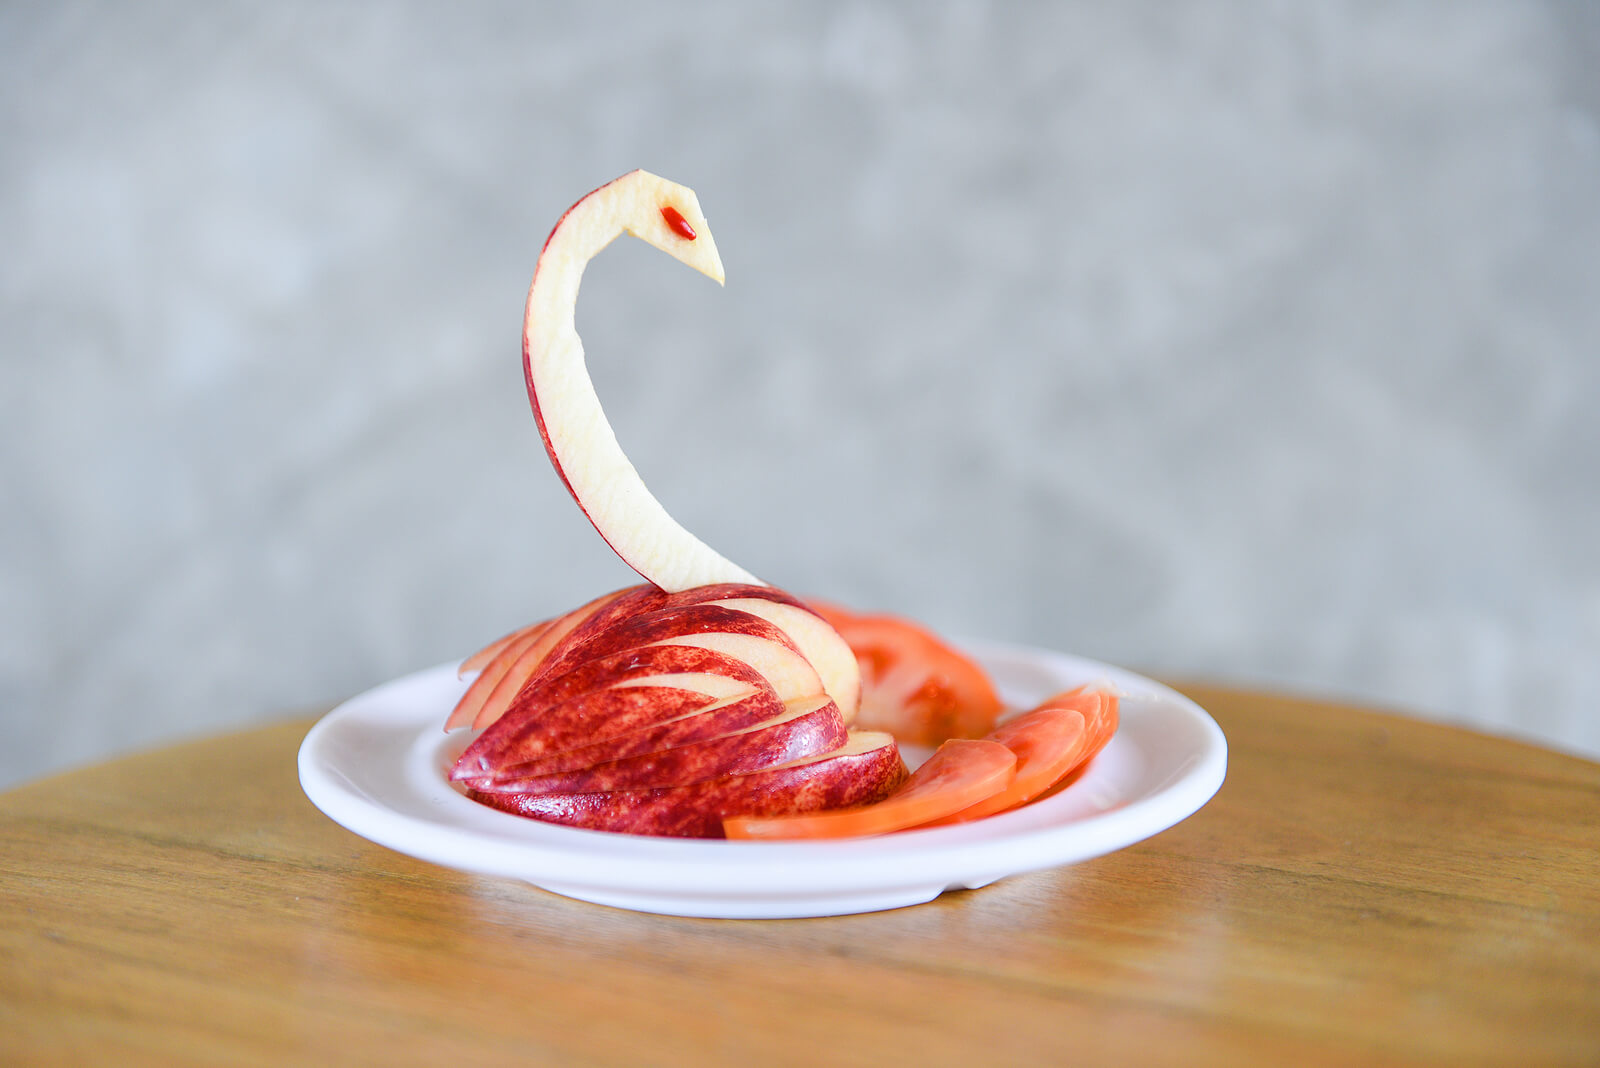 Cisne hecho con fruta gracias al arte Mukimono.